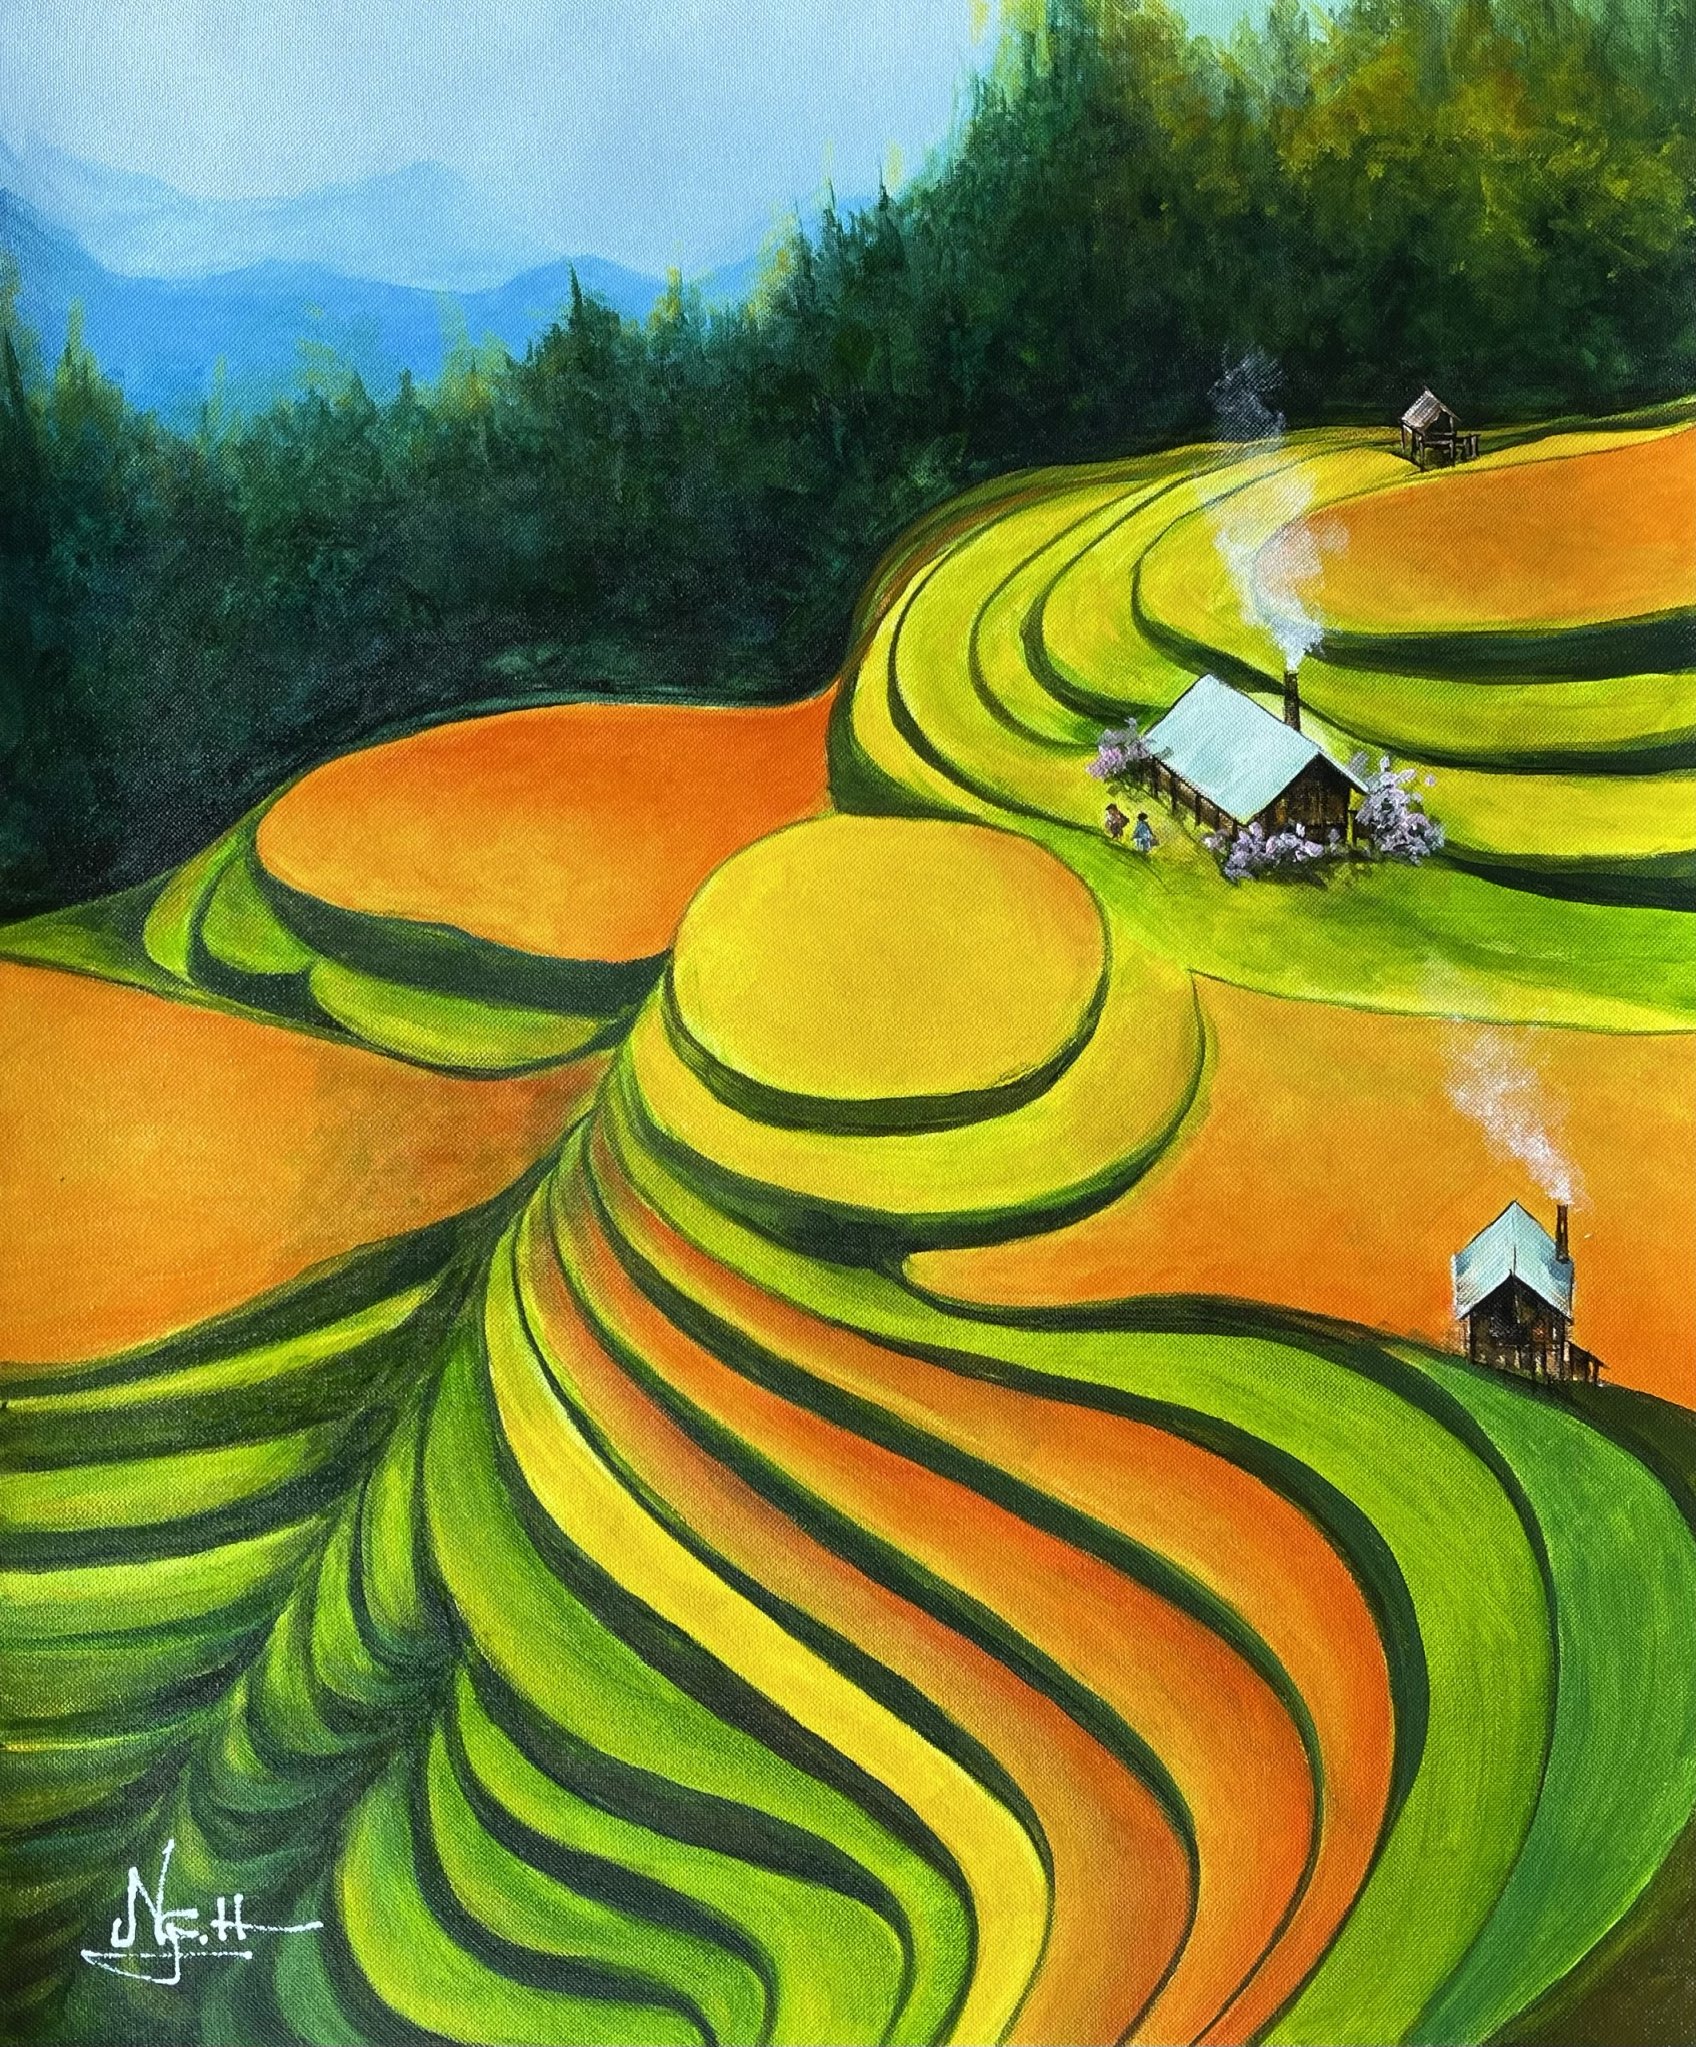 Tranh Phong Cảnh Vùng Cao: Những bức tranh phong cảnh vùng cao là một nét độc đáo của nghệ thuật Việt Nam, chứa đựng những dấu ấn rất riêng của vùng cao đầy sắc màu. Bức tranh giúp bạn truyền tải được cảm xúc đắm say của người khác, khiến bạn cảm thấy như được đưa đến với những cánh đồng, núi rừng trong xanh.